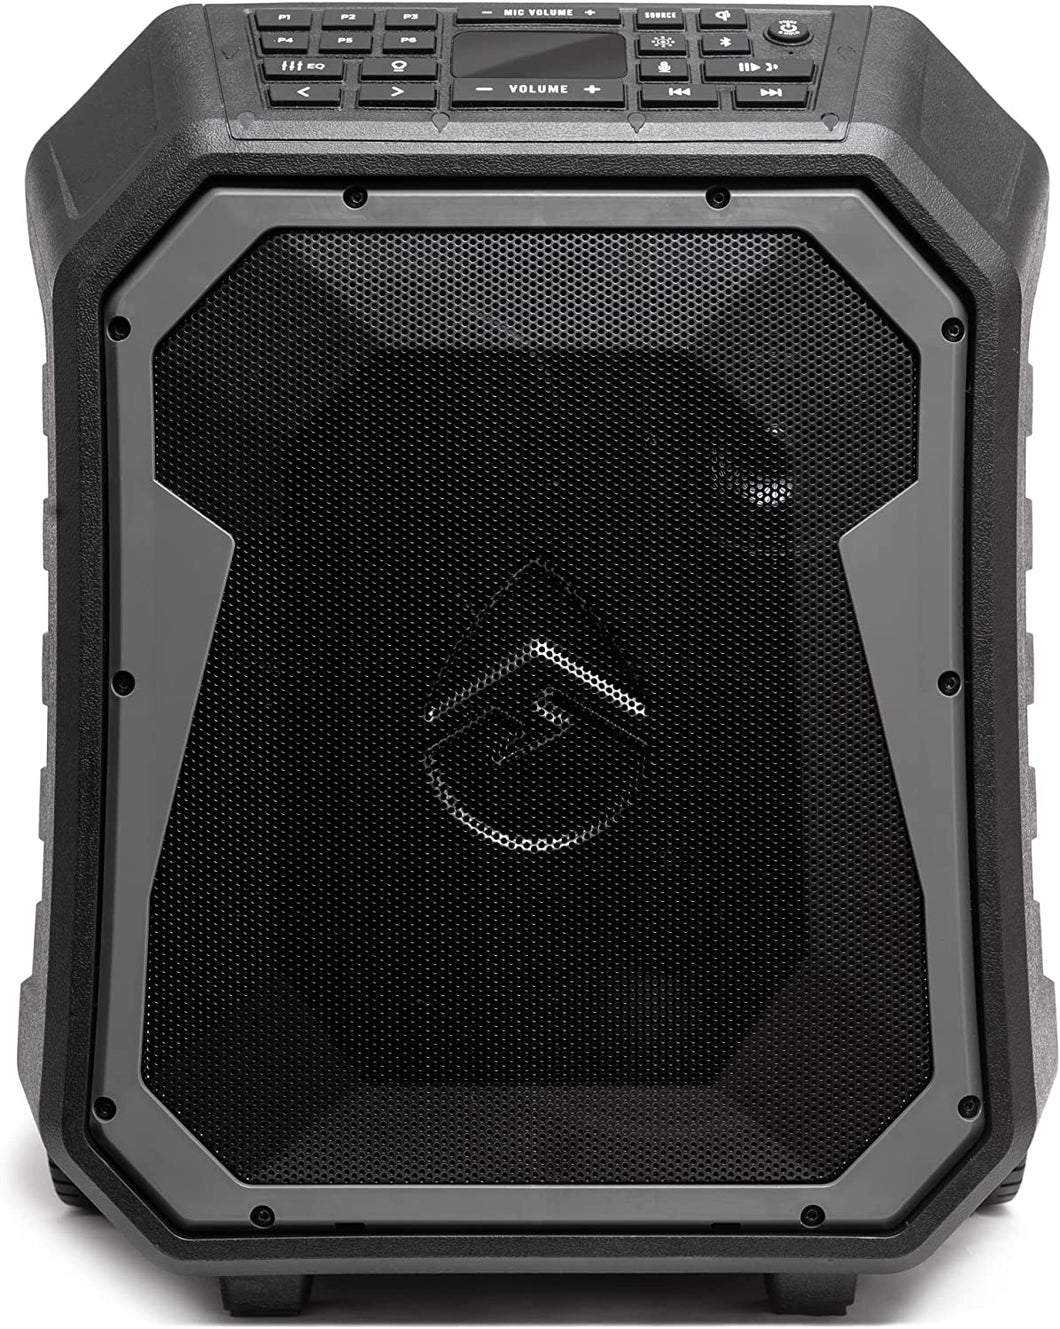 Ecoxgear Ecoboulder Pro IP67 Waterproof Bluetooth Speaker